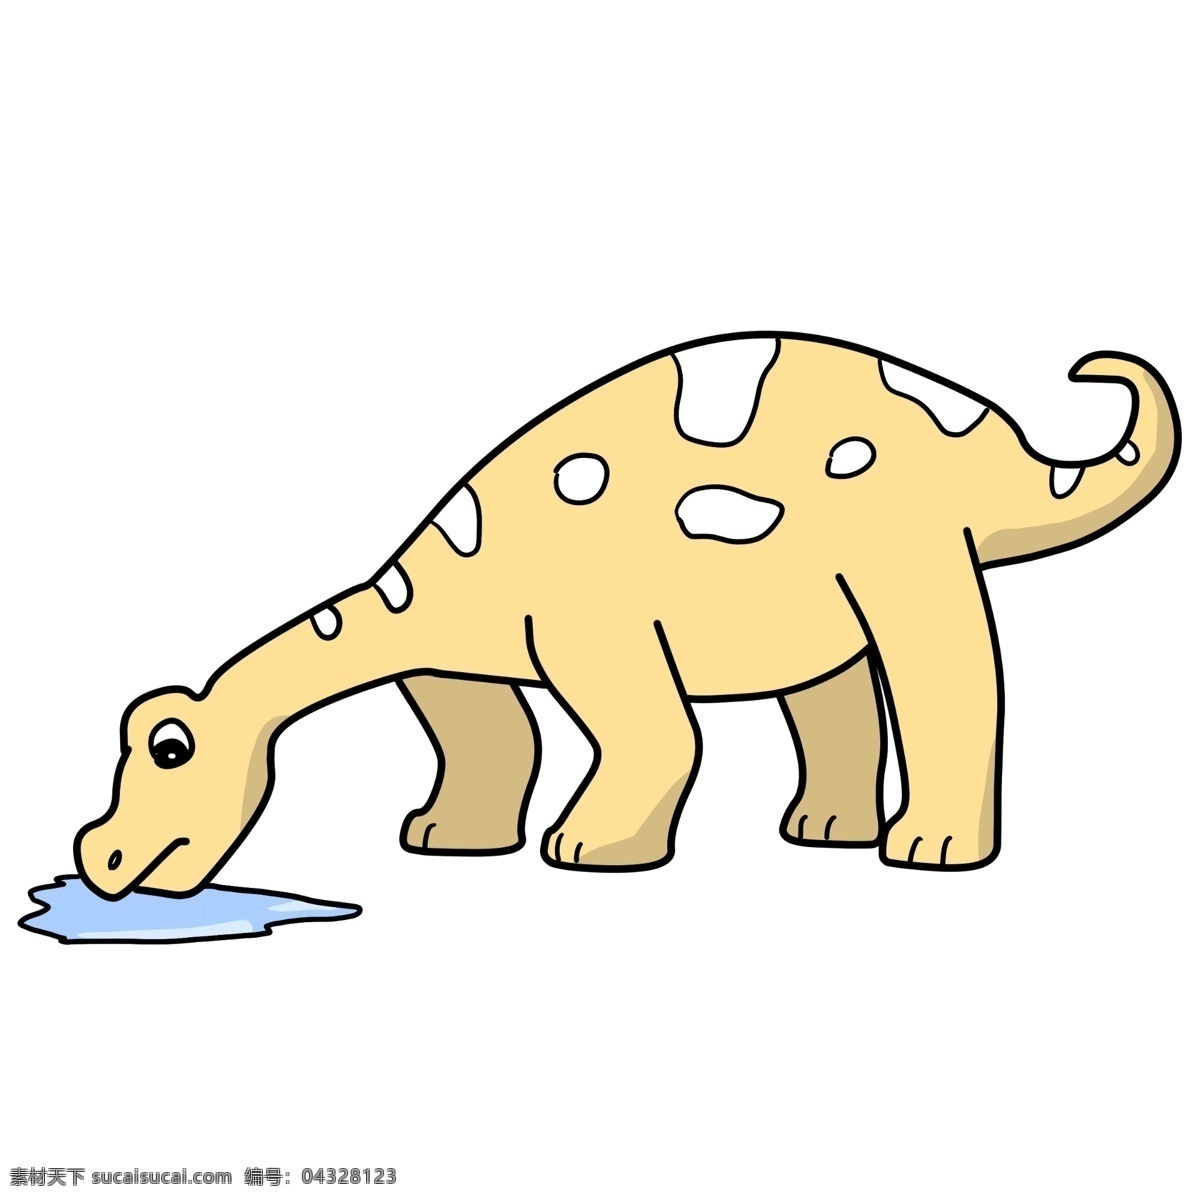 喝水 小 恐龙 插画 喝水的恐龙 卡通插画 恐龙插画 动物插画 白垩纪恐龙 恐龙玩具 黄色的恐龙